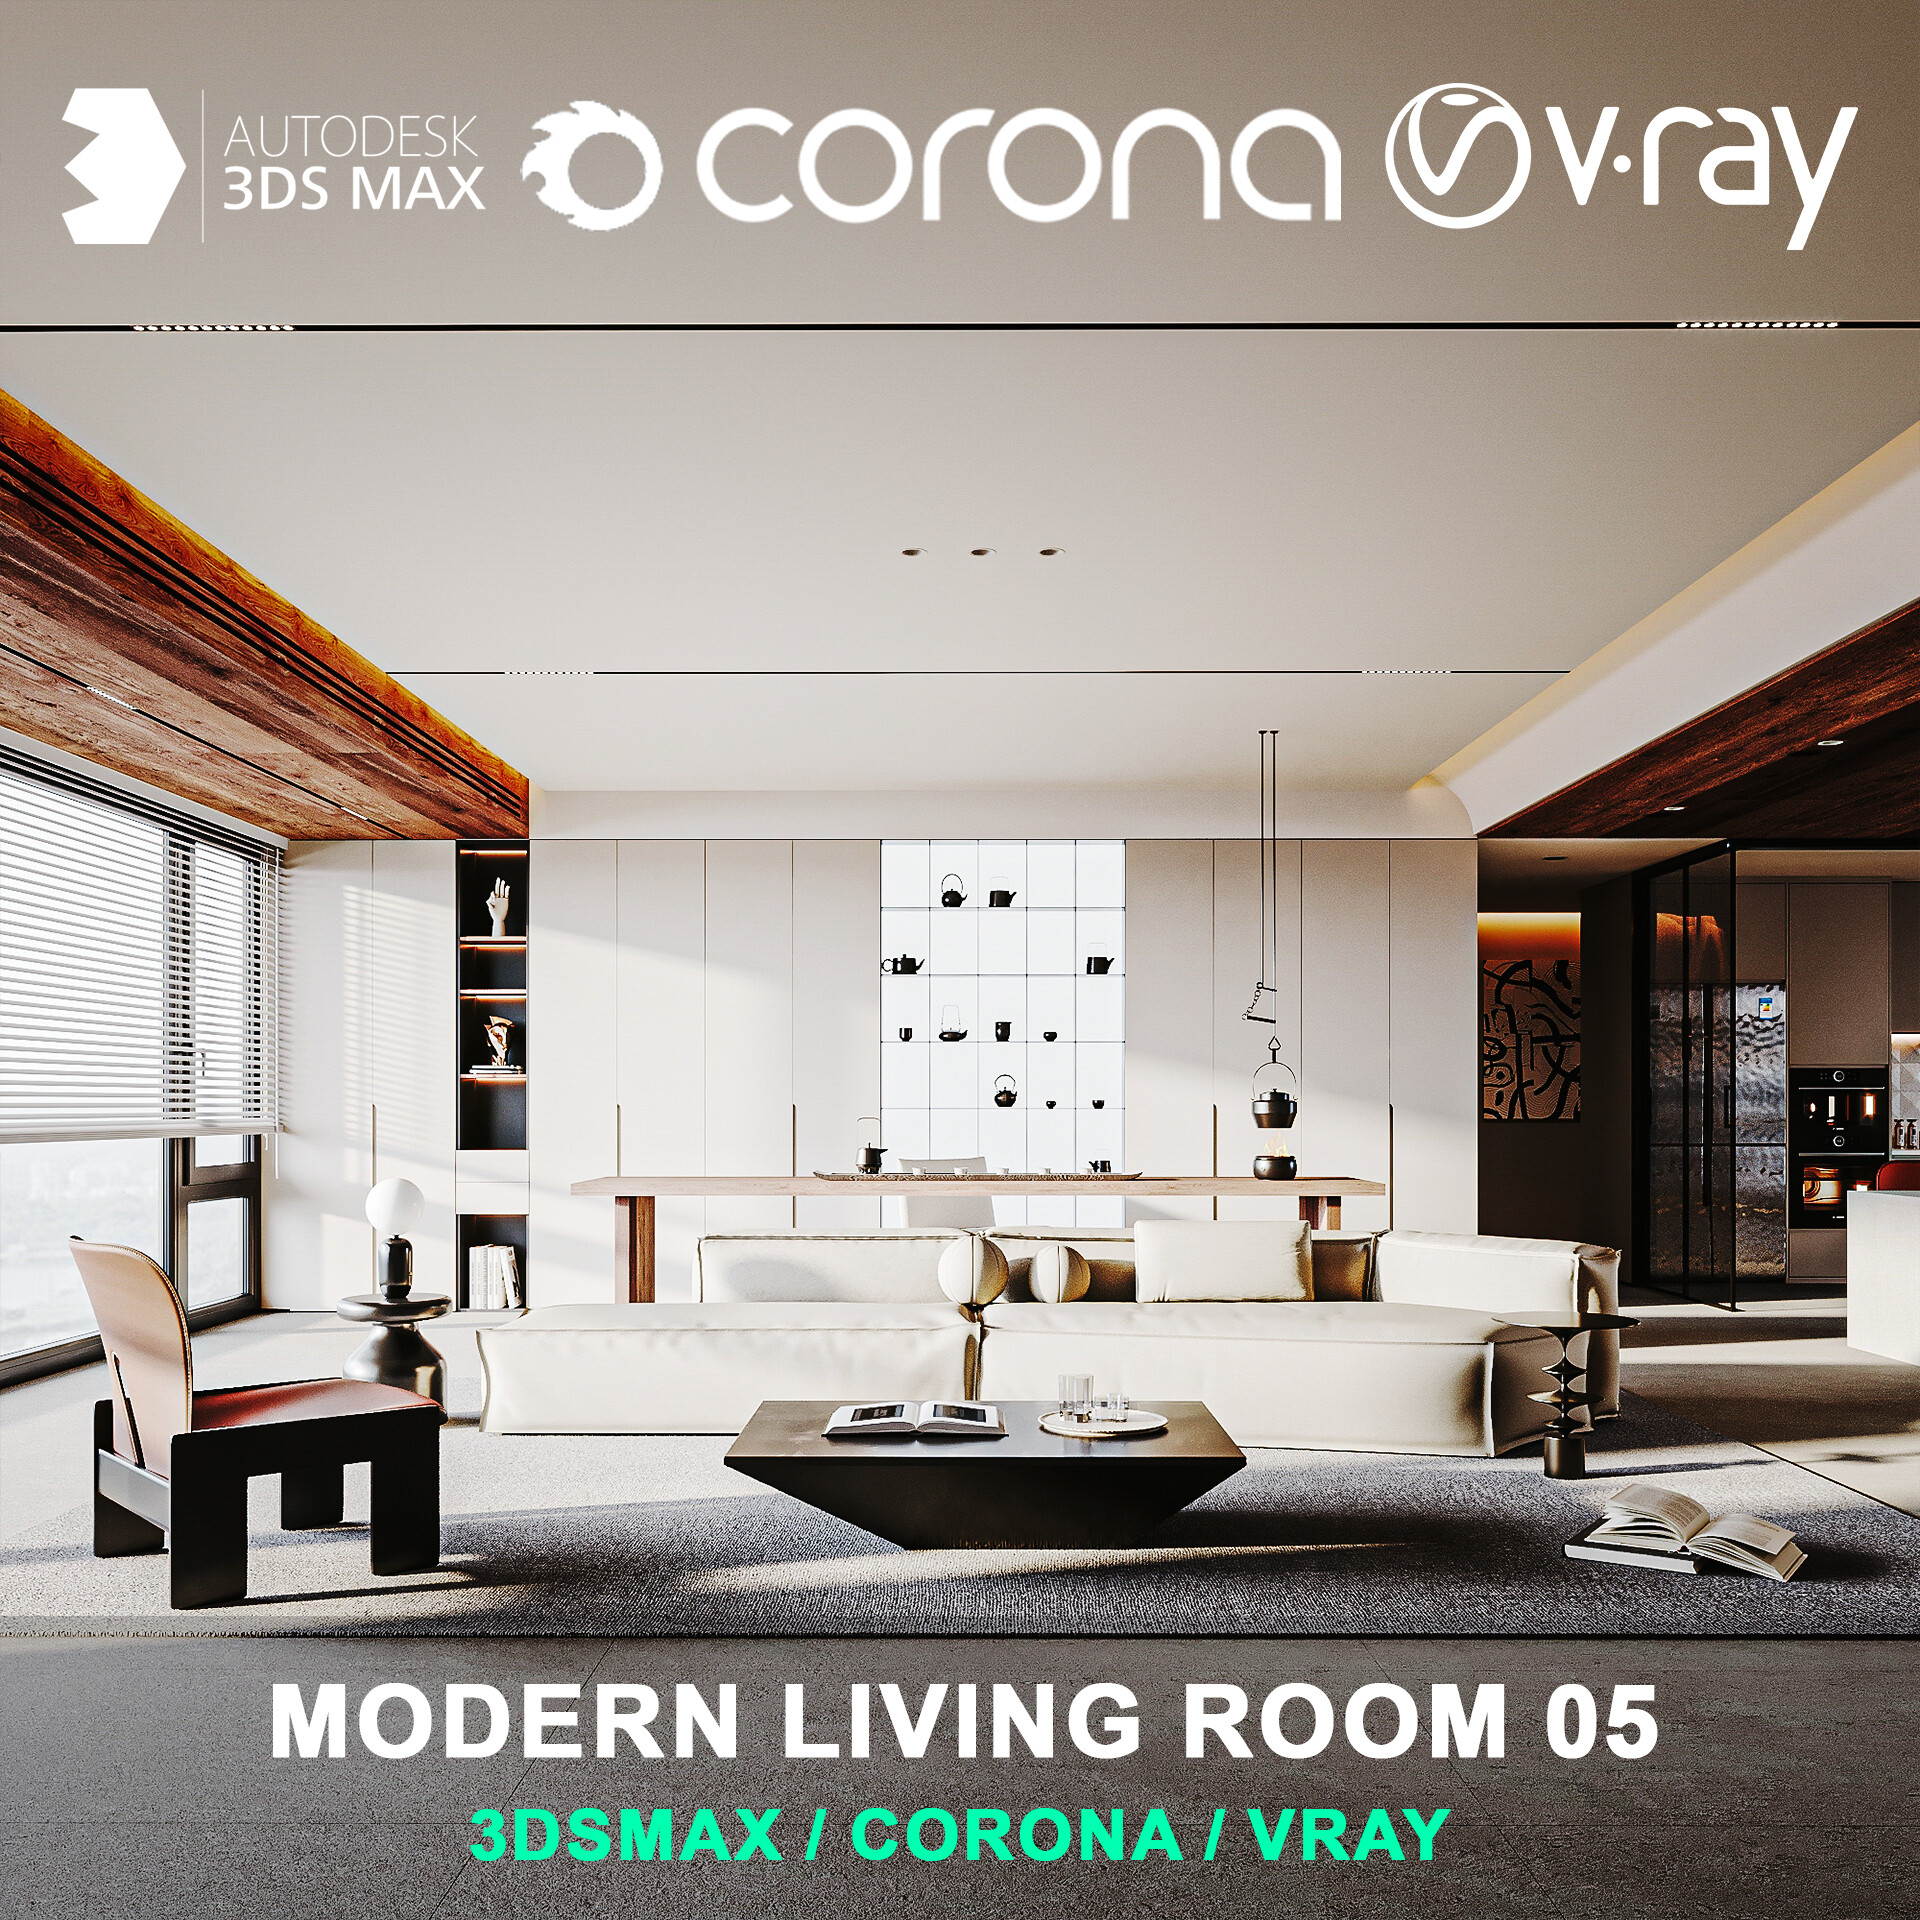 Modern living room 05 for 3DsMax